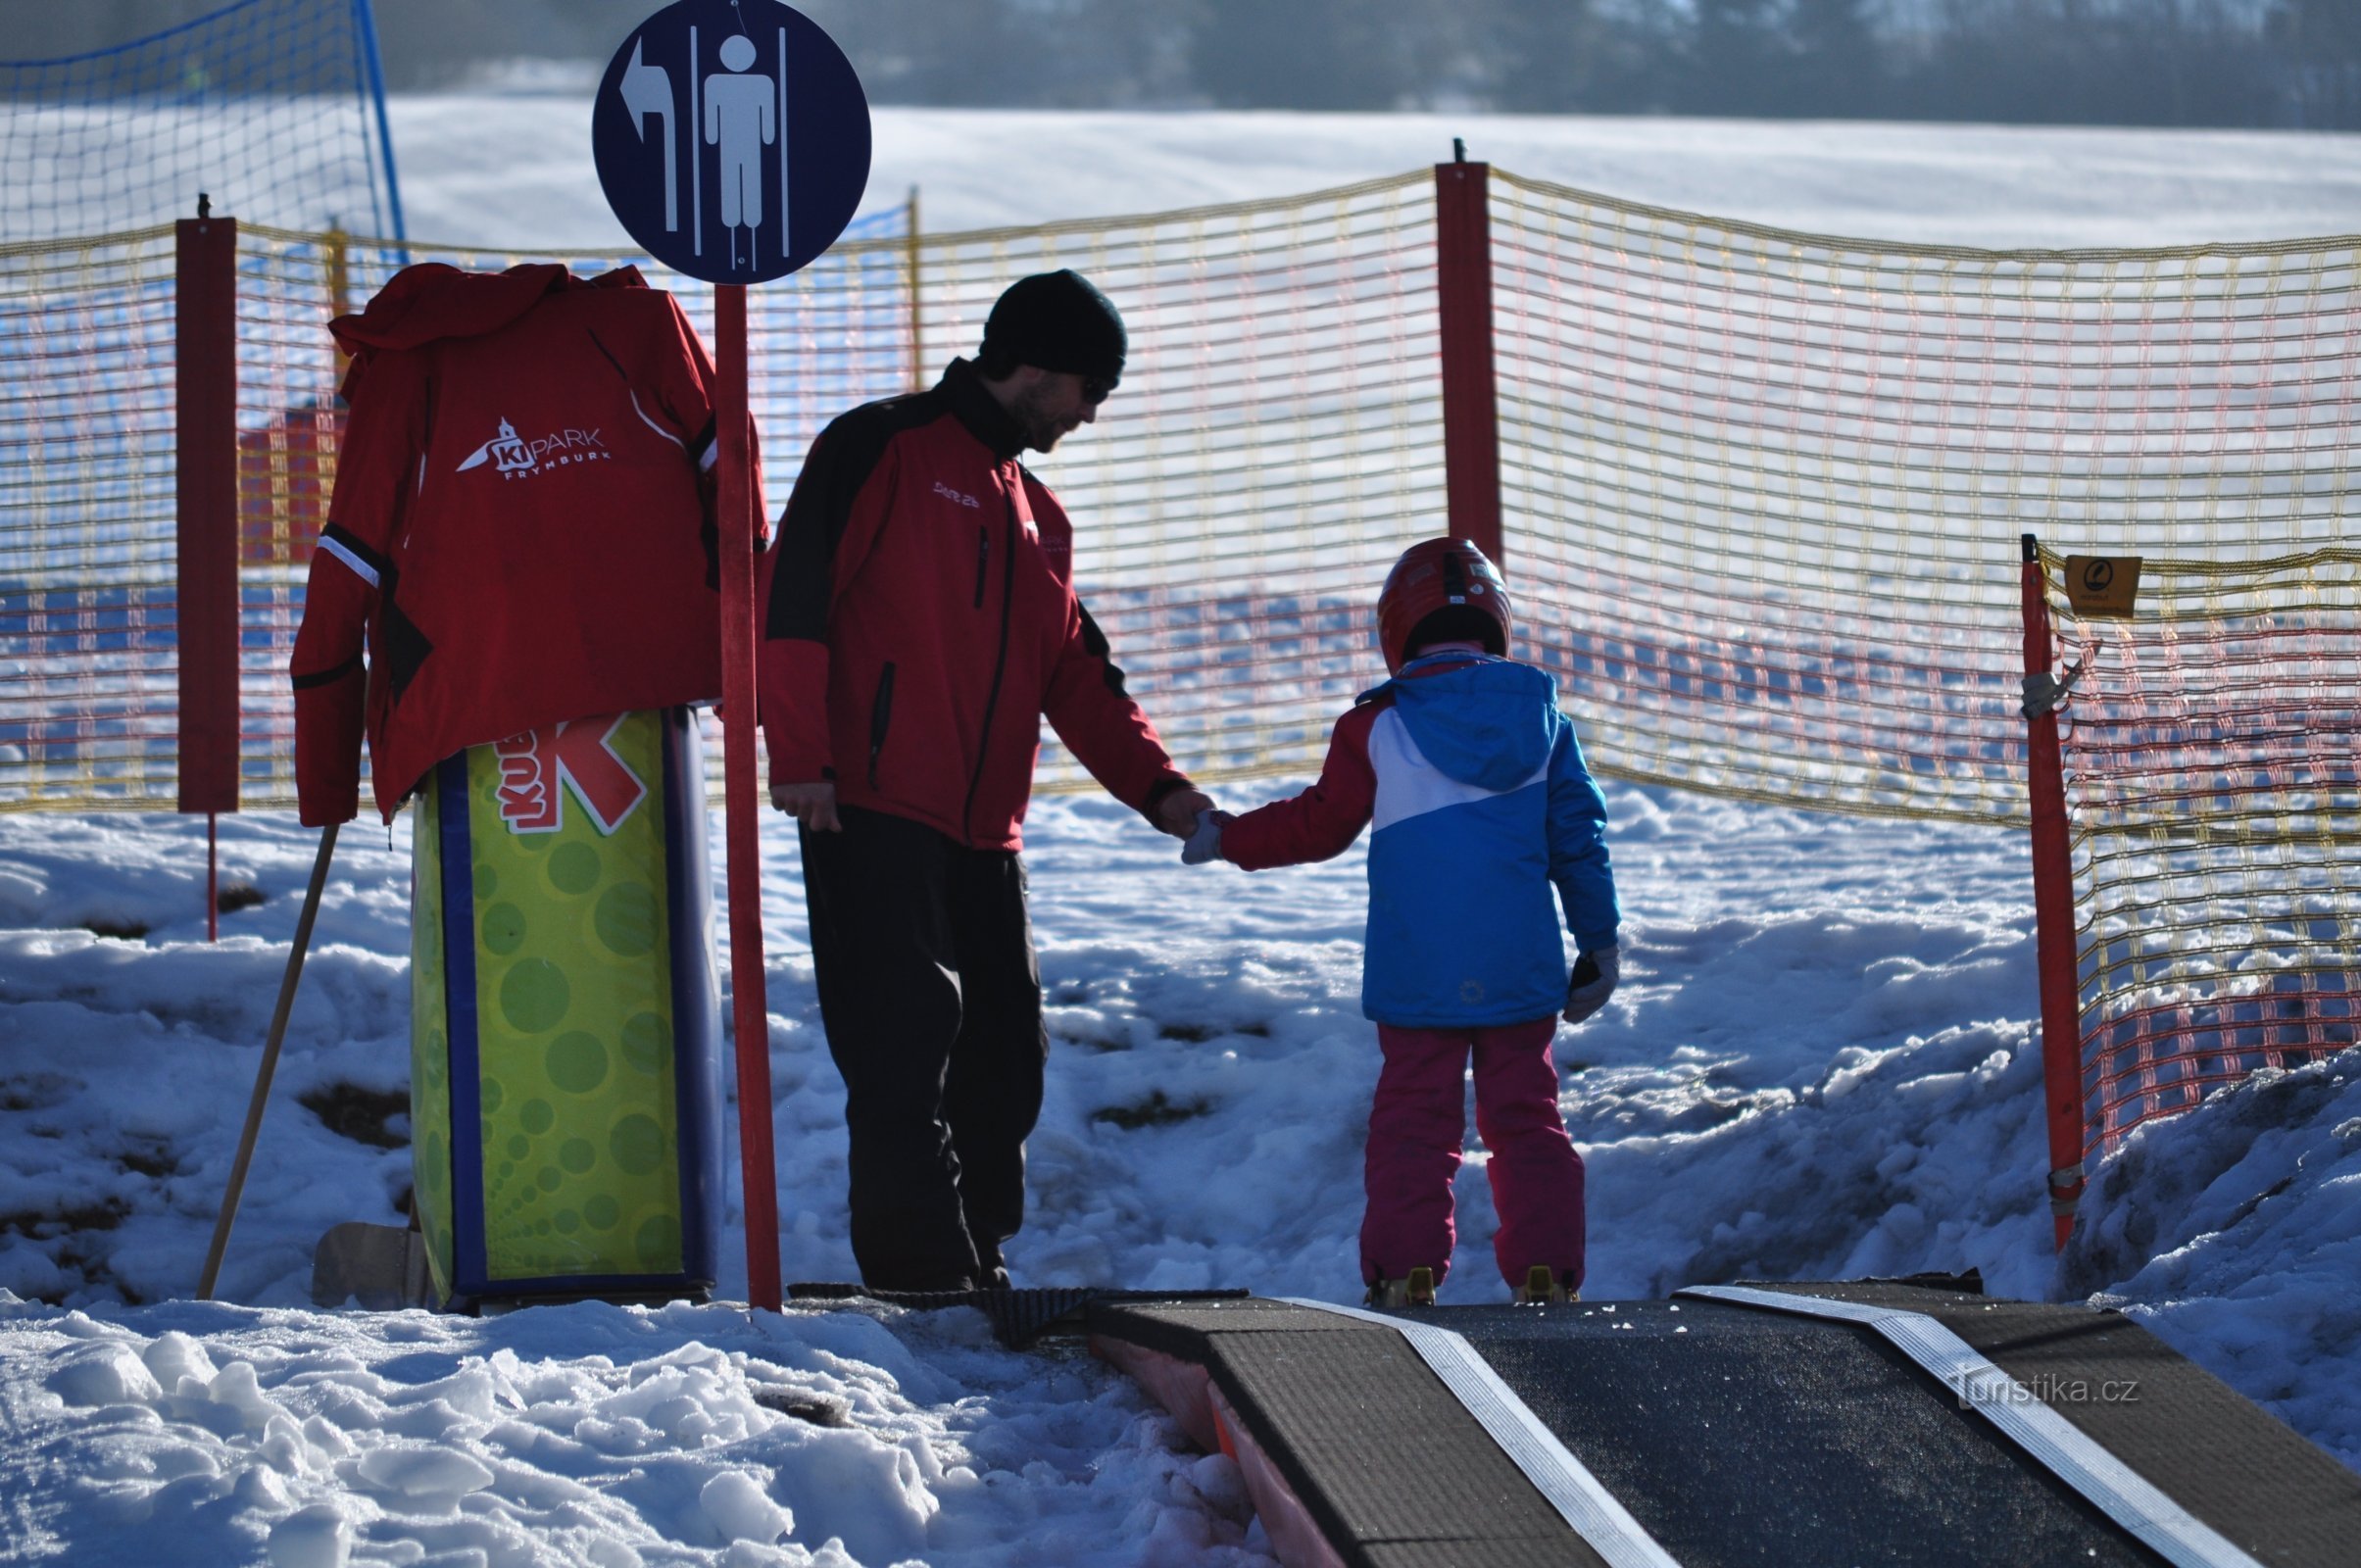 chúng tôi luôn sẵn lòng giúp đỡ khi bắt đầu trượt tuyết